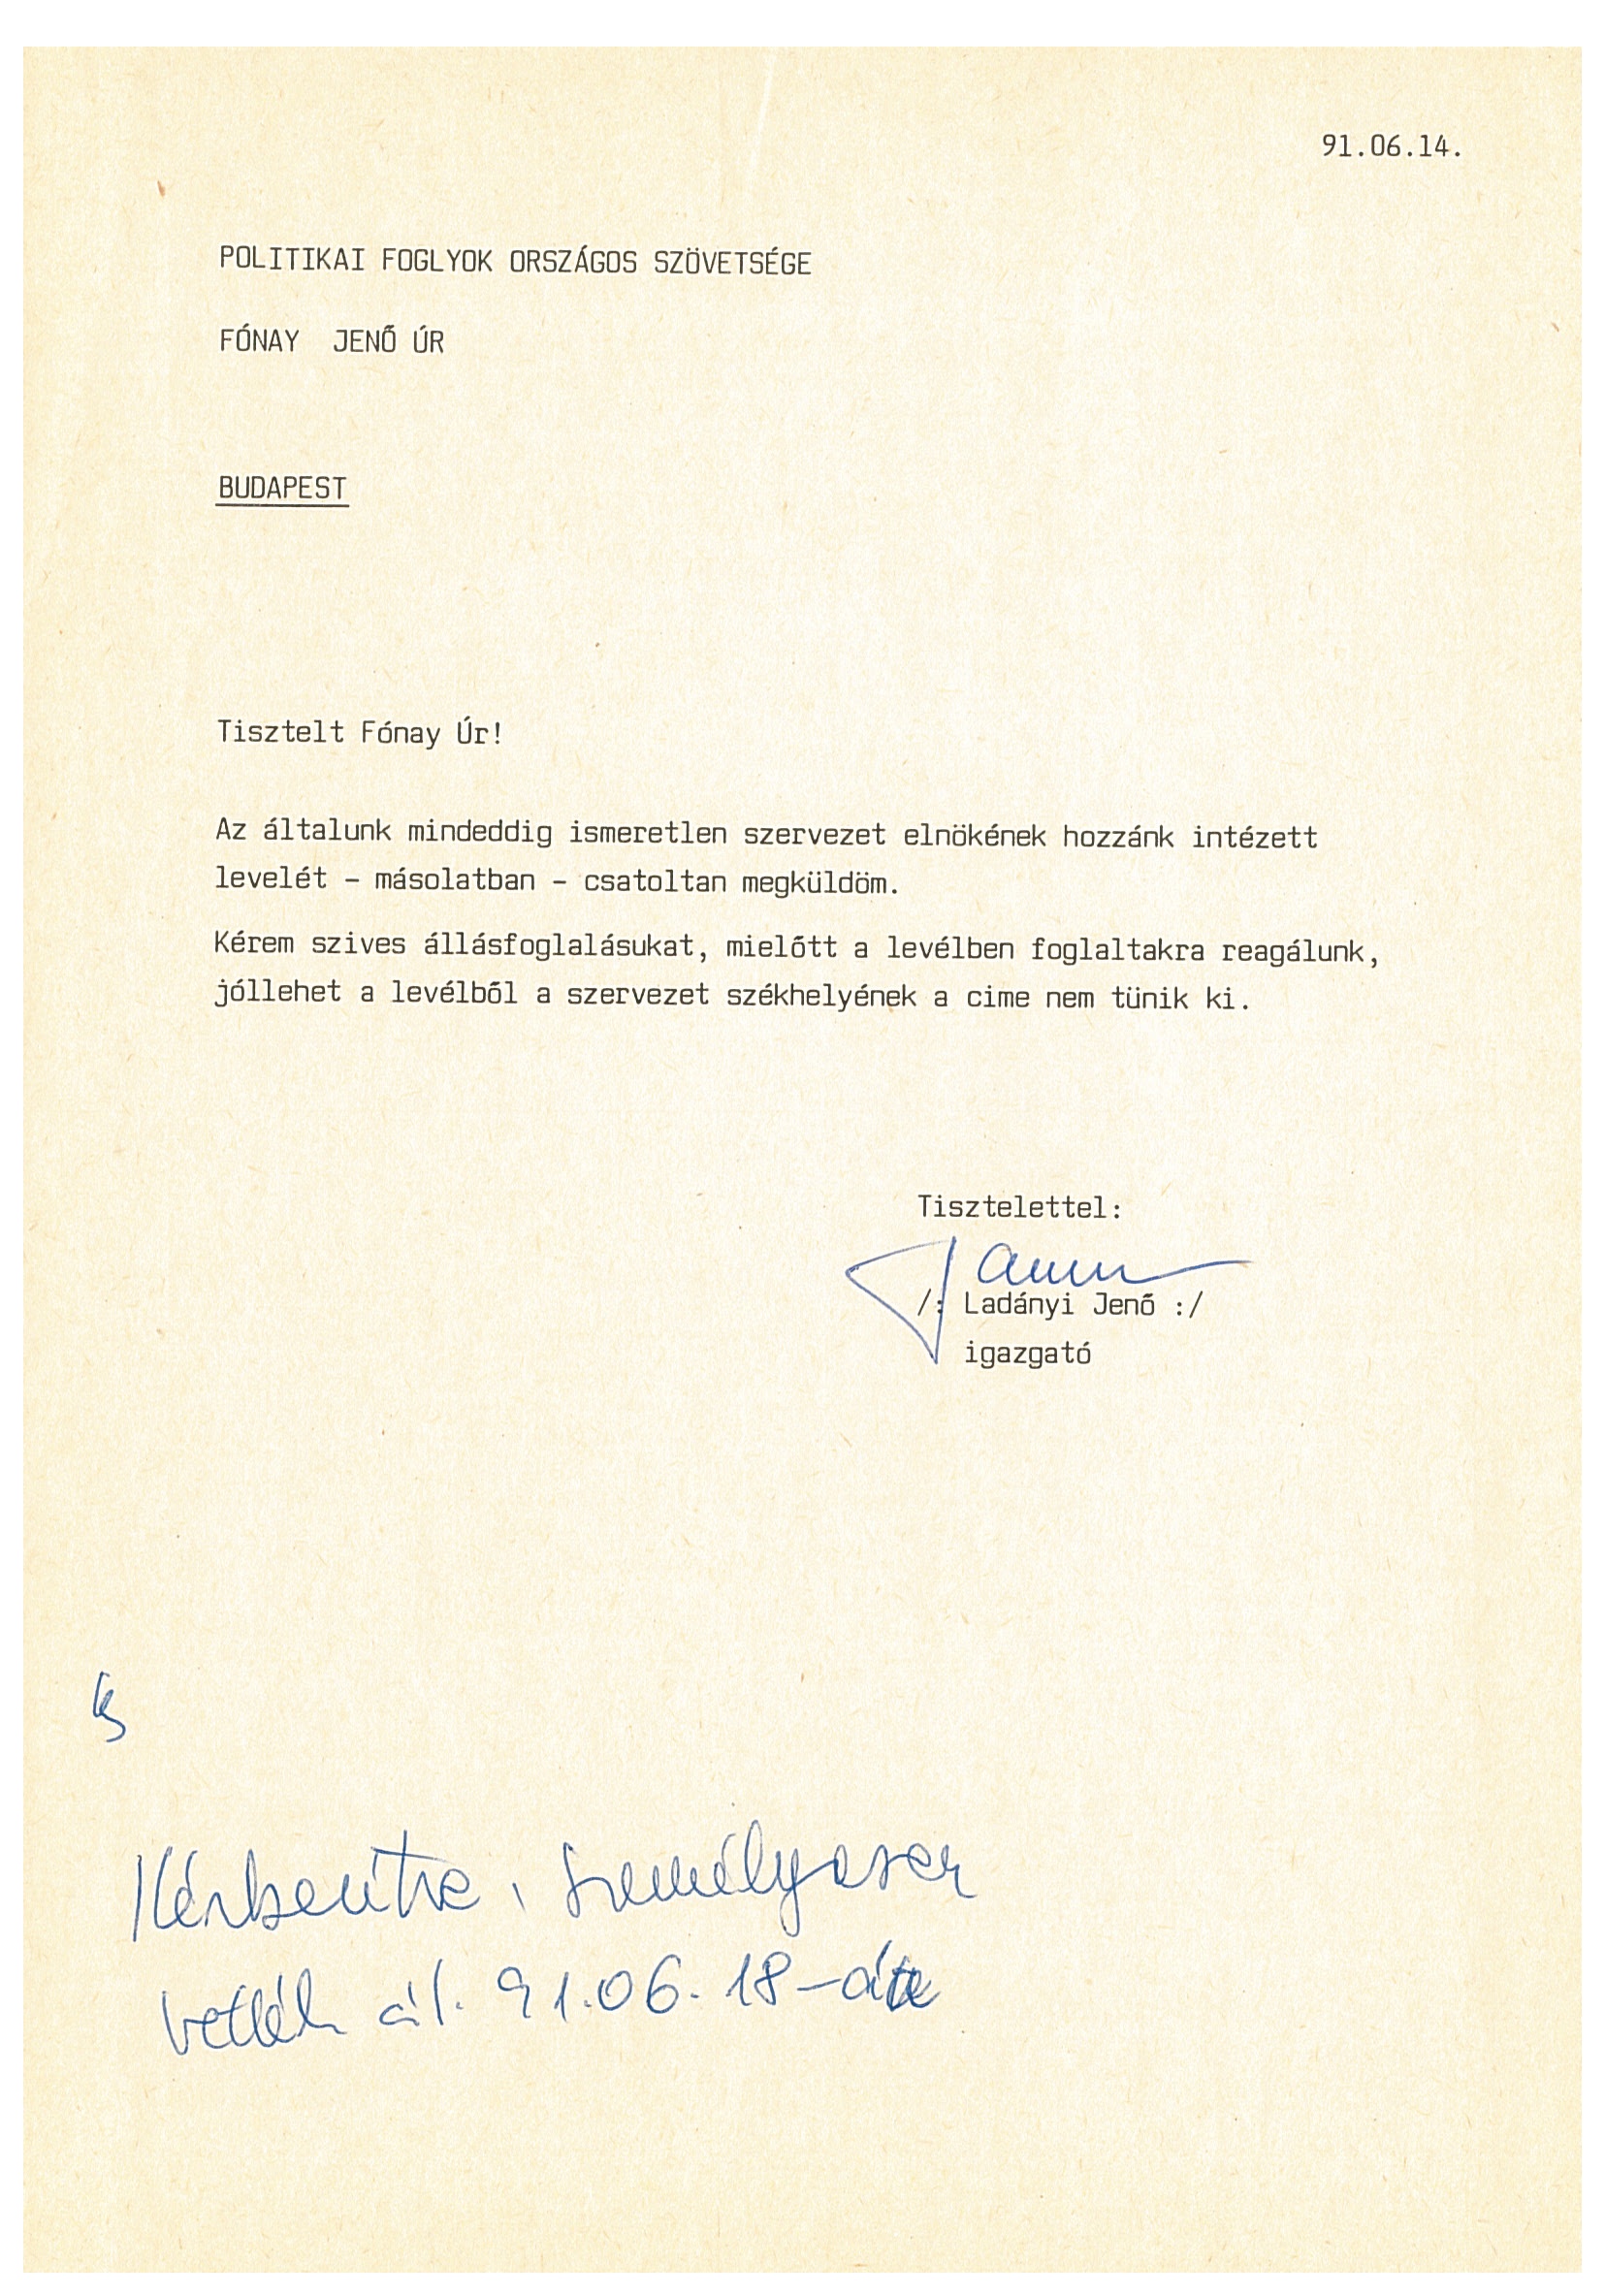 Ladányi Jenő levele a Politikai Foglyok Országos Szövetségének (Nemzeti Örökség Intézete – Kegyeleti Múzeum CC BY-NC-SA)